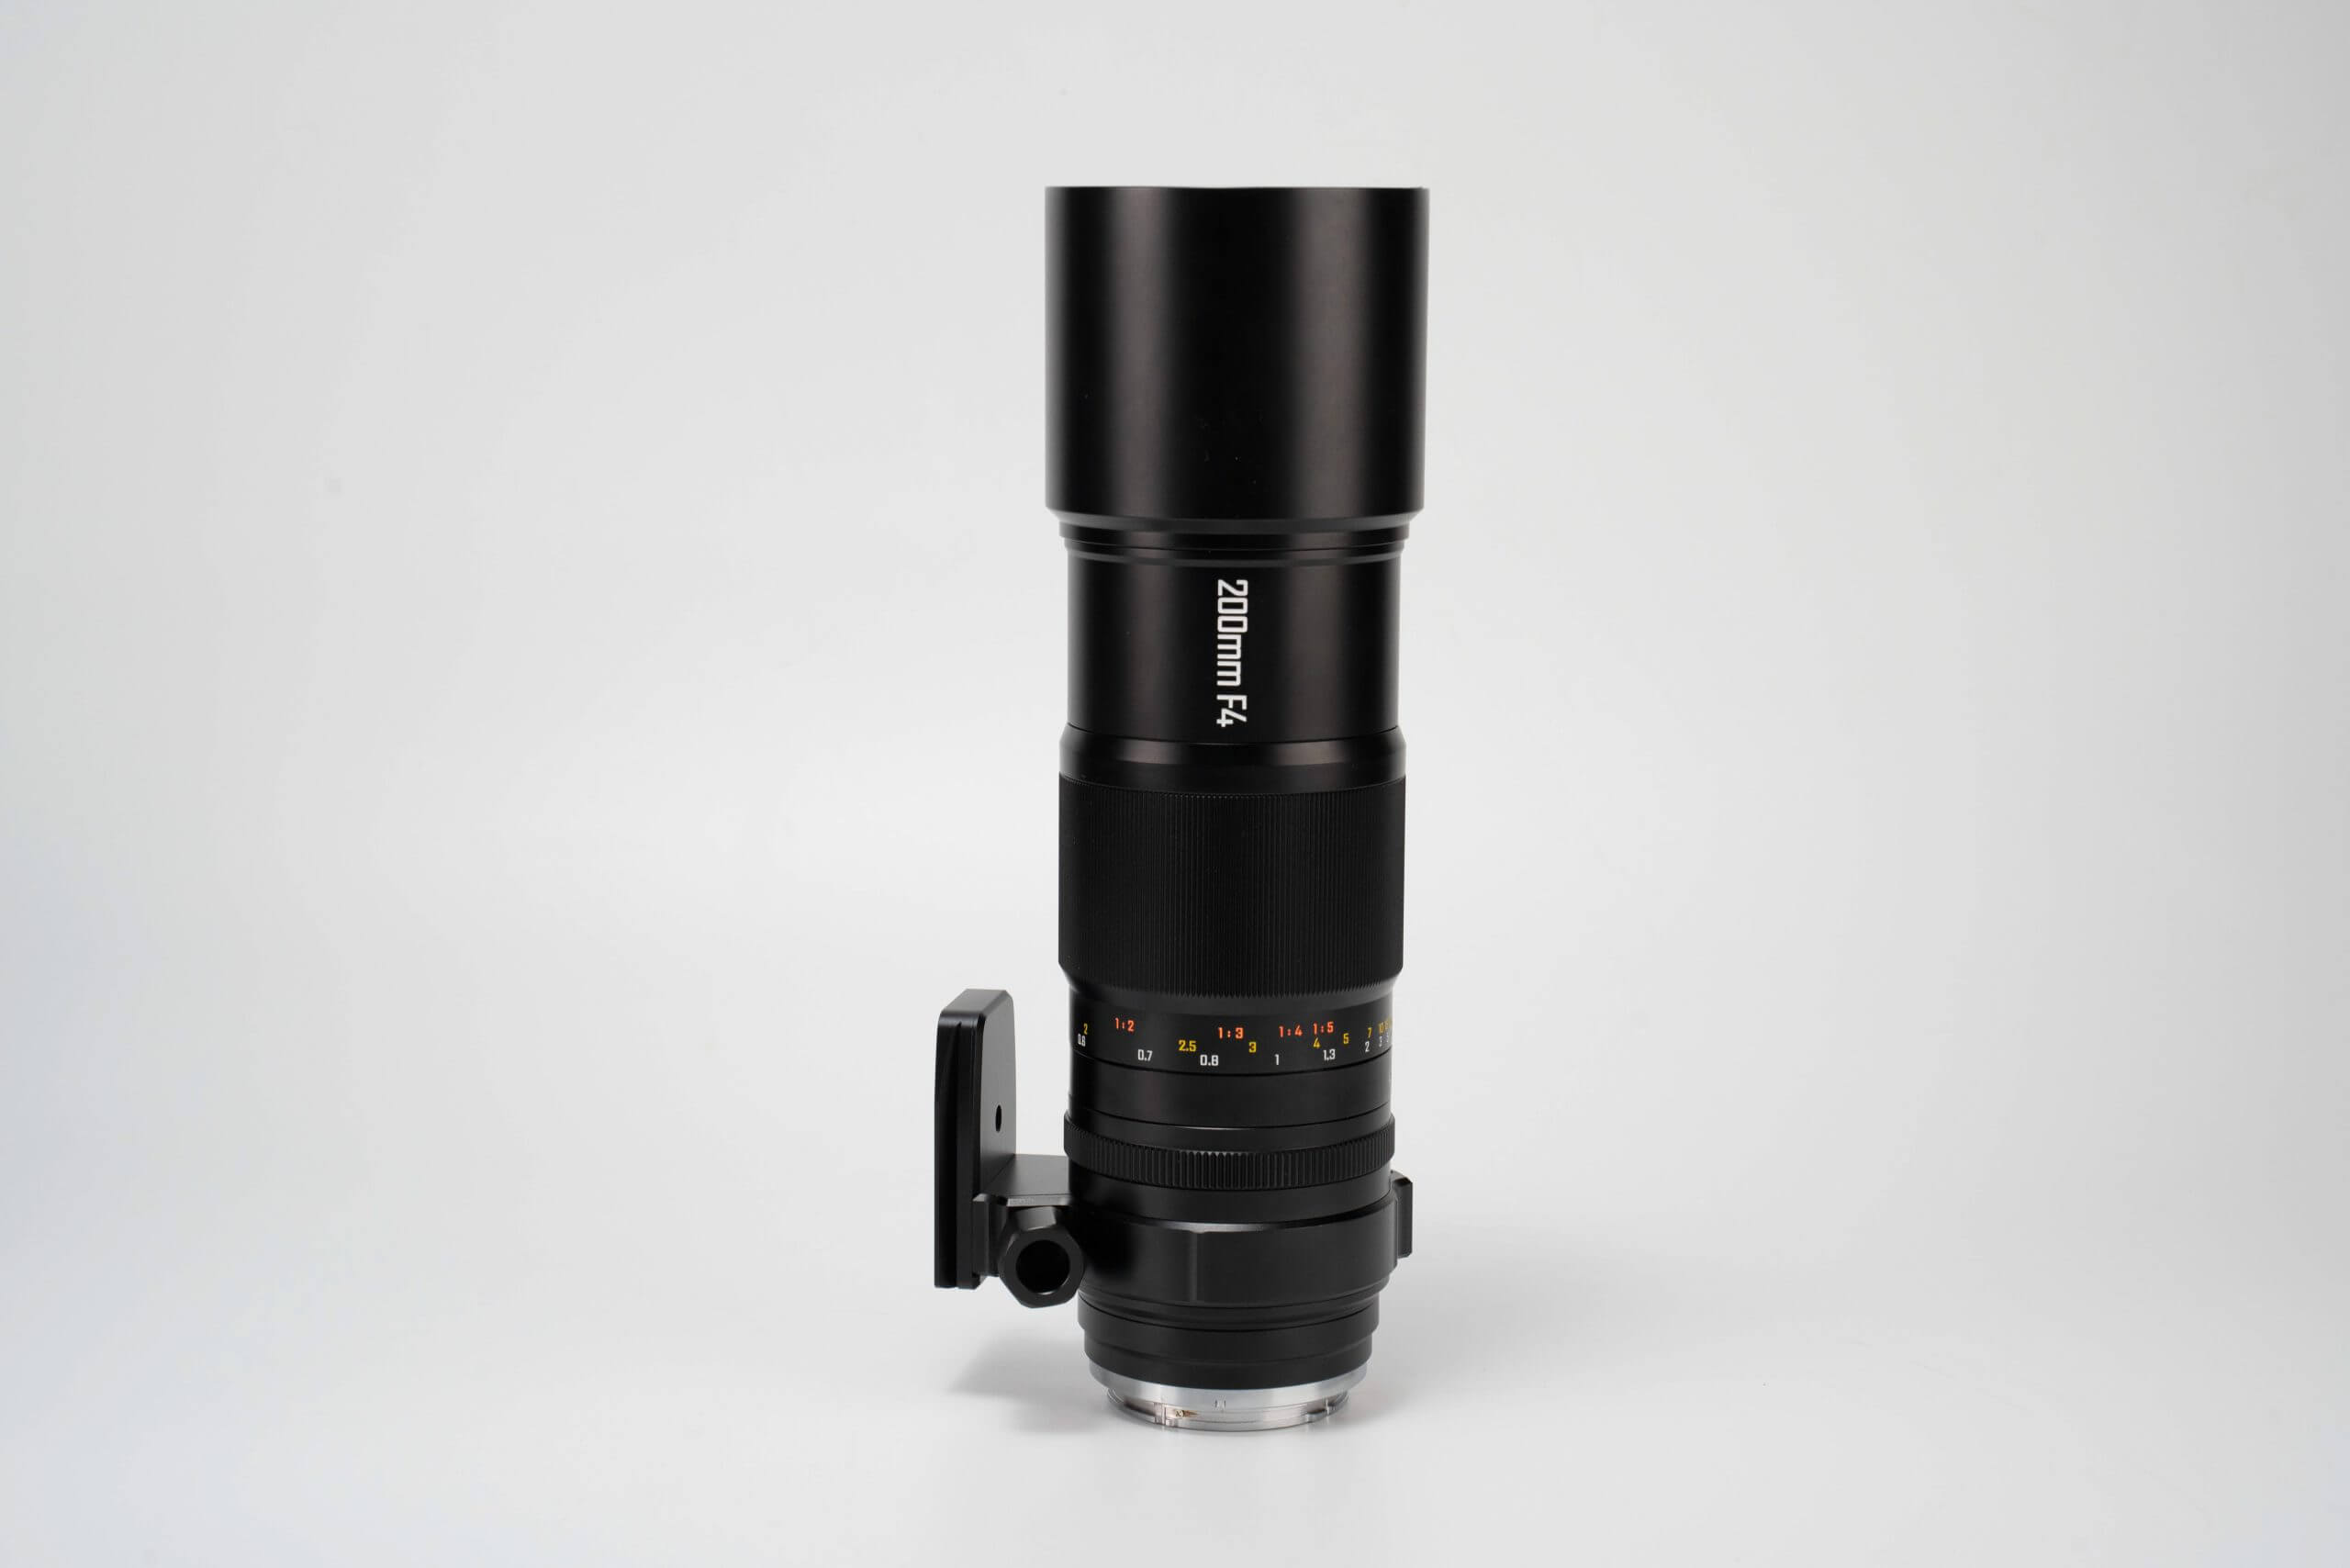 mitakon200f4apomacro 10 scaled - Zhong Yi Optics officially announces the Mitakon 200mm F/4 APO Macro Lens